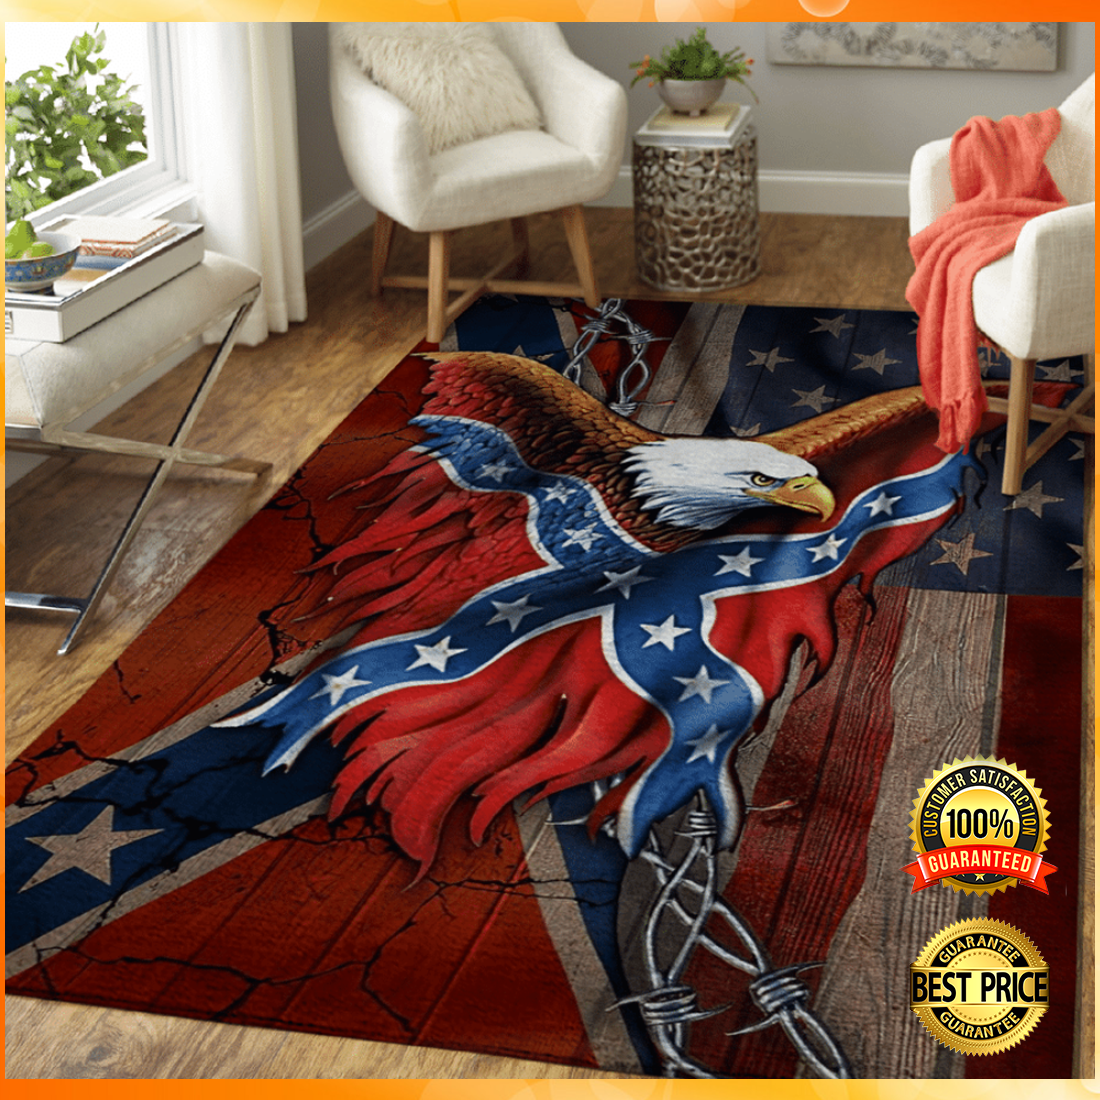 Eagle and confederate battle flag rug